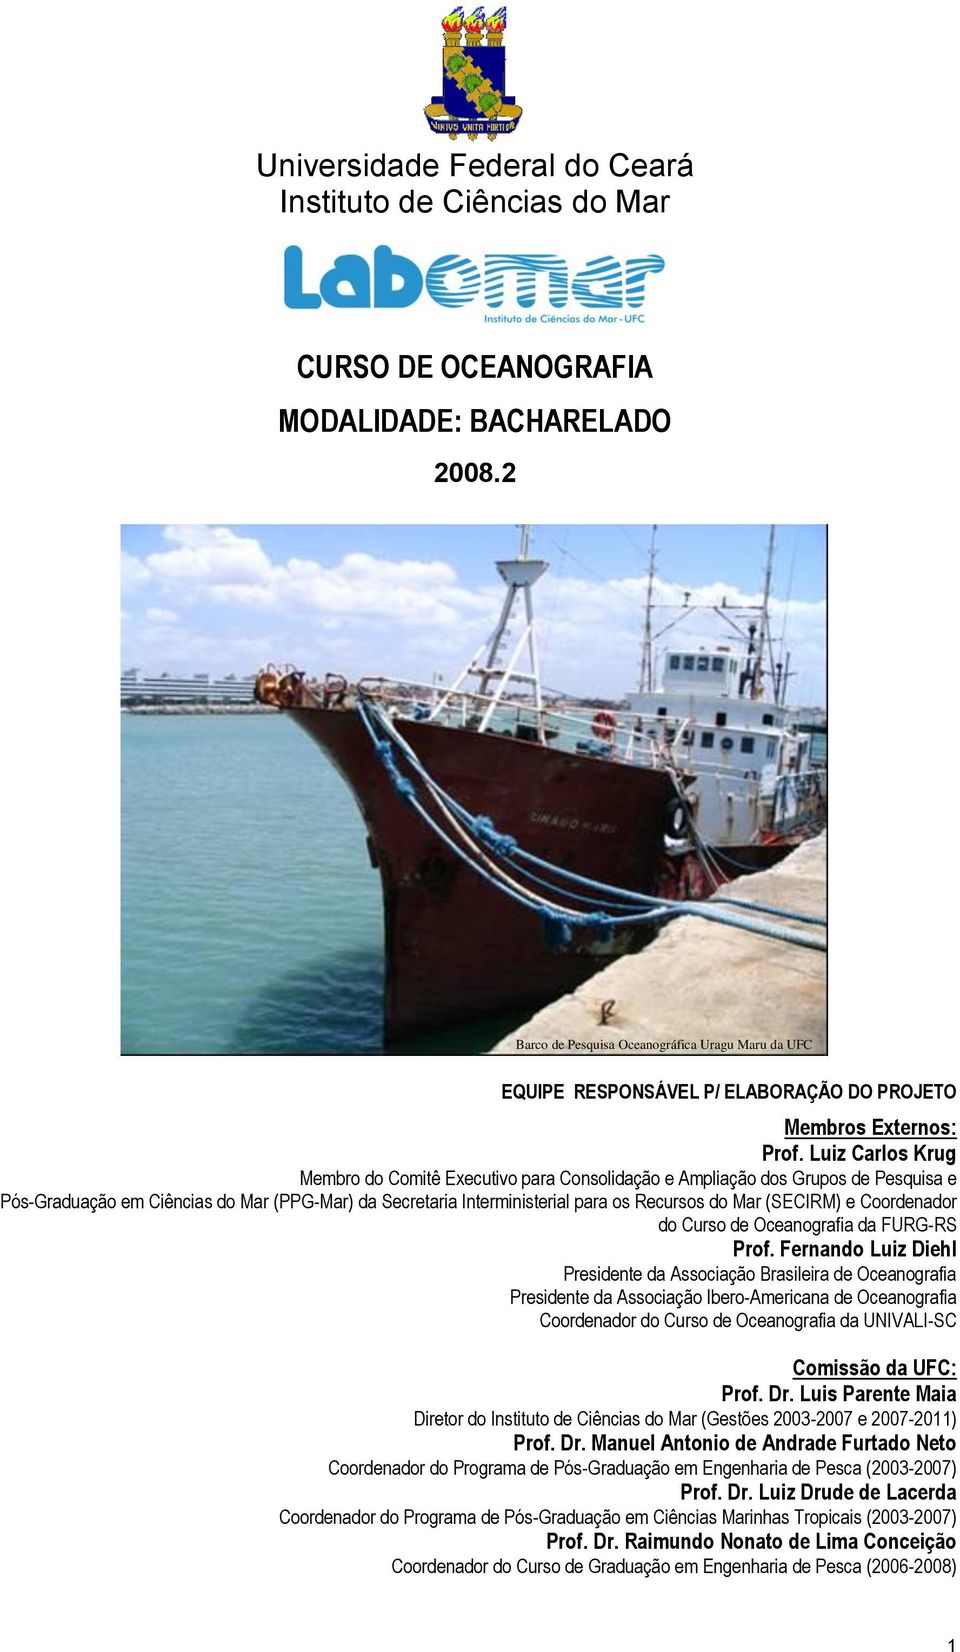 Luiz Carlos Krug Membro do Comitê Executivo para Consolidação e Ampliação dos Grupos de Pesquisa e Pós-Graduação em Ciências do Mar (PPG-Mar) da Secretaria Interministerial para os Recursos do Mar